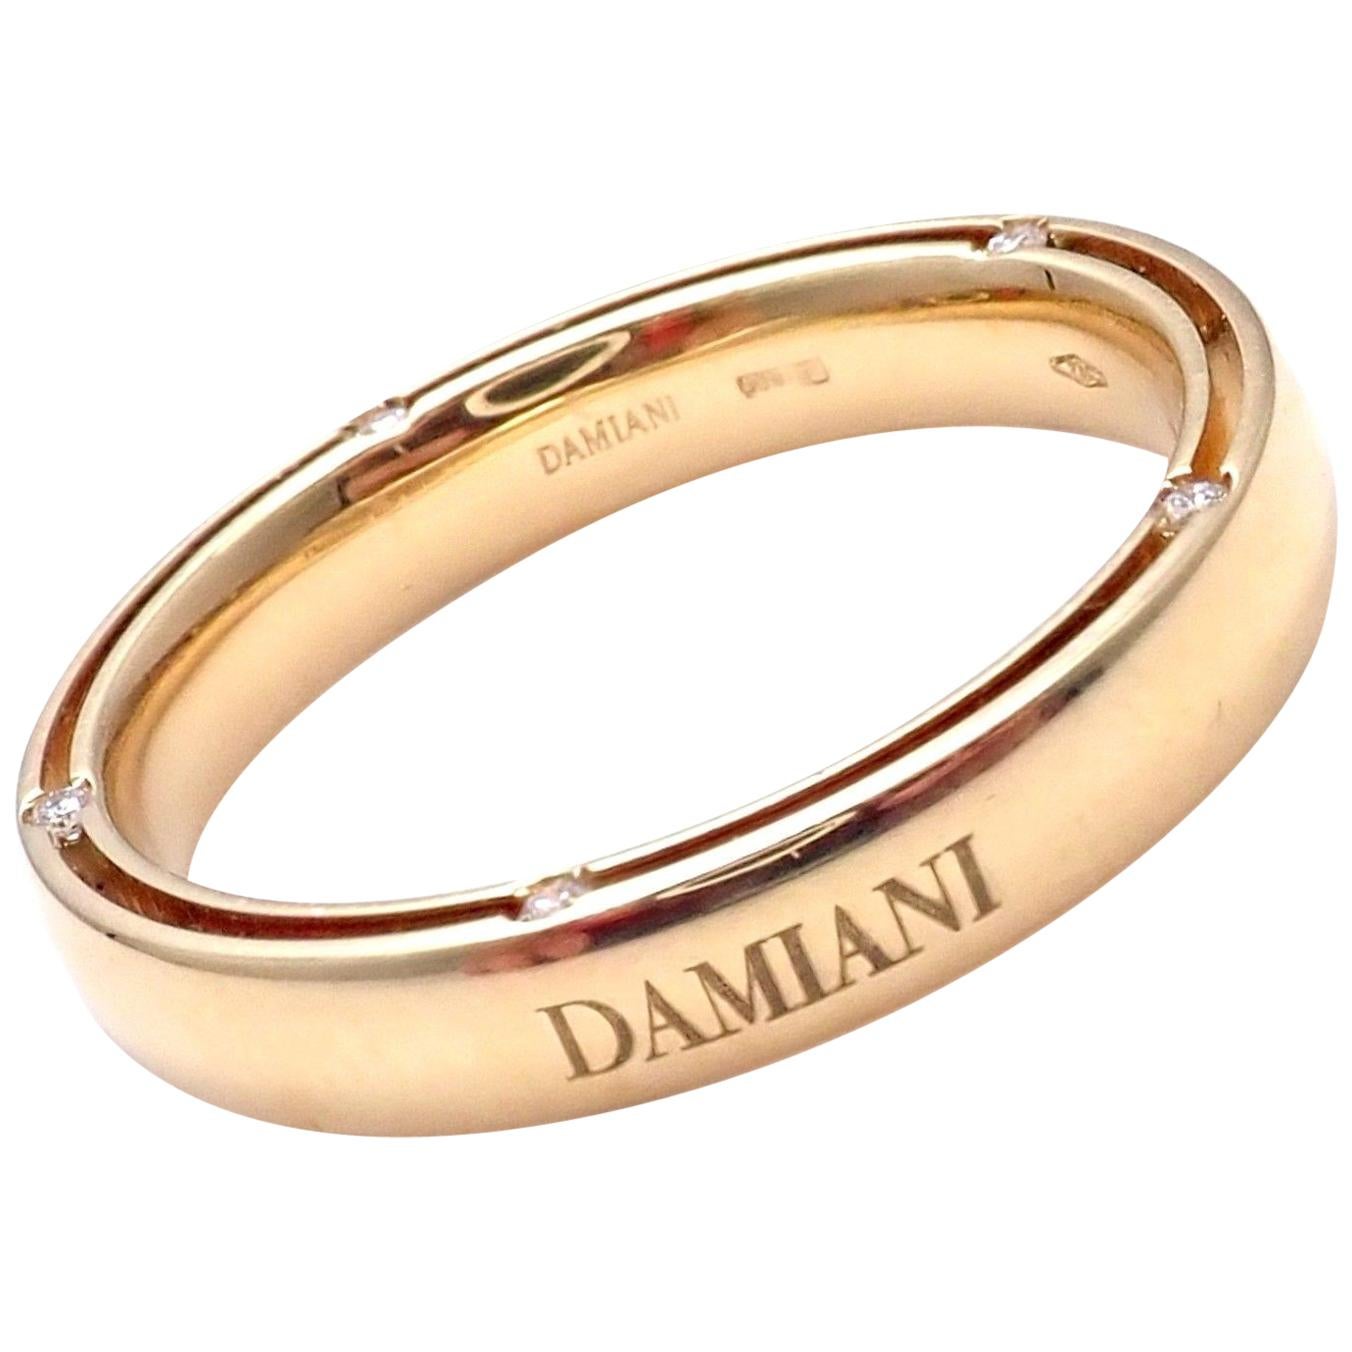 Damiani and Brad Pitt 10 Diamond Yellow Gold Band Ring